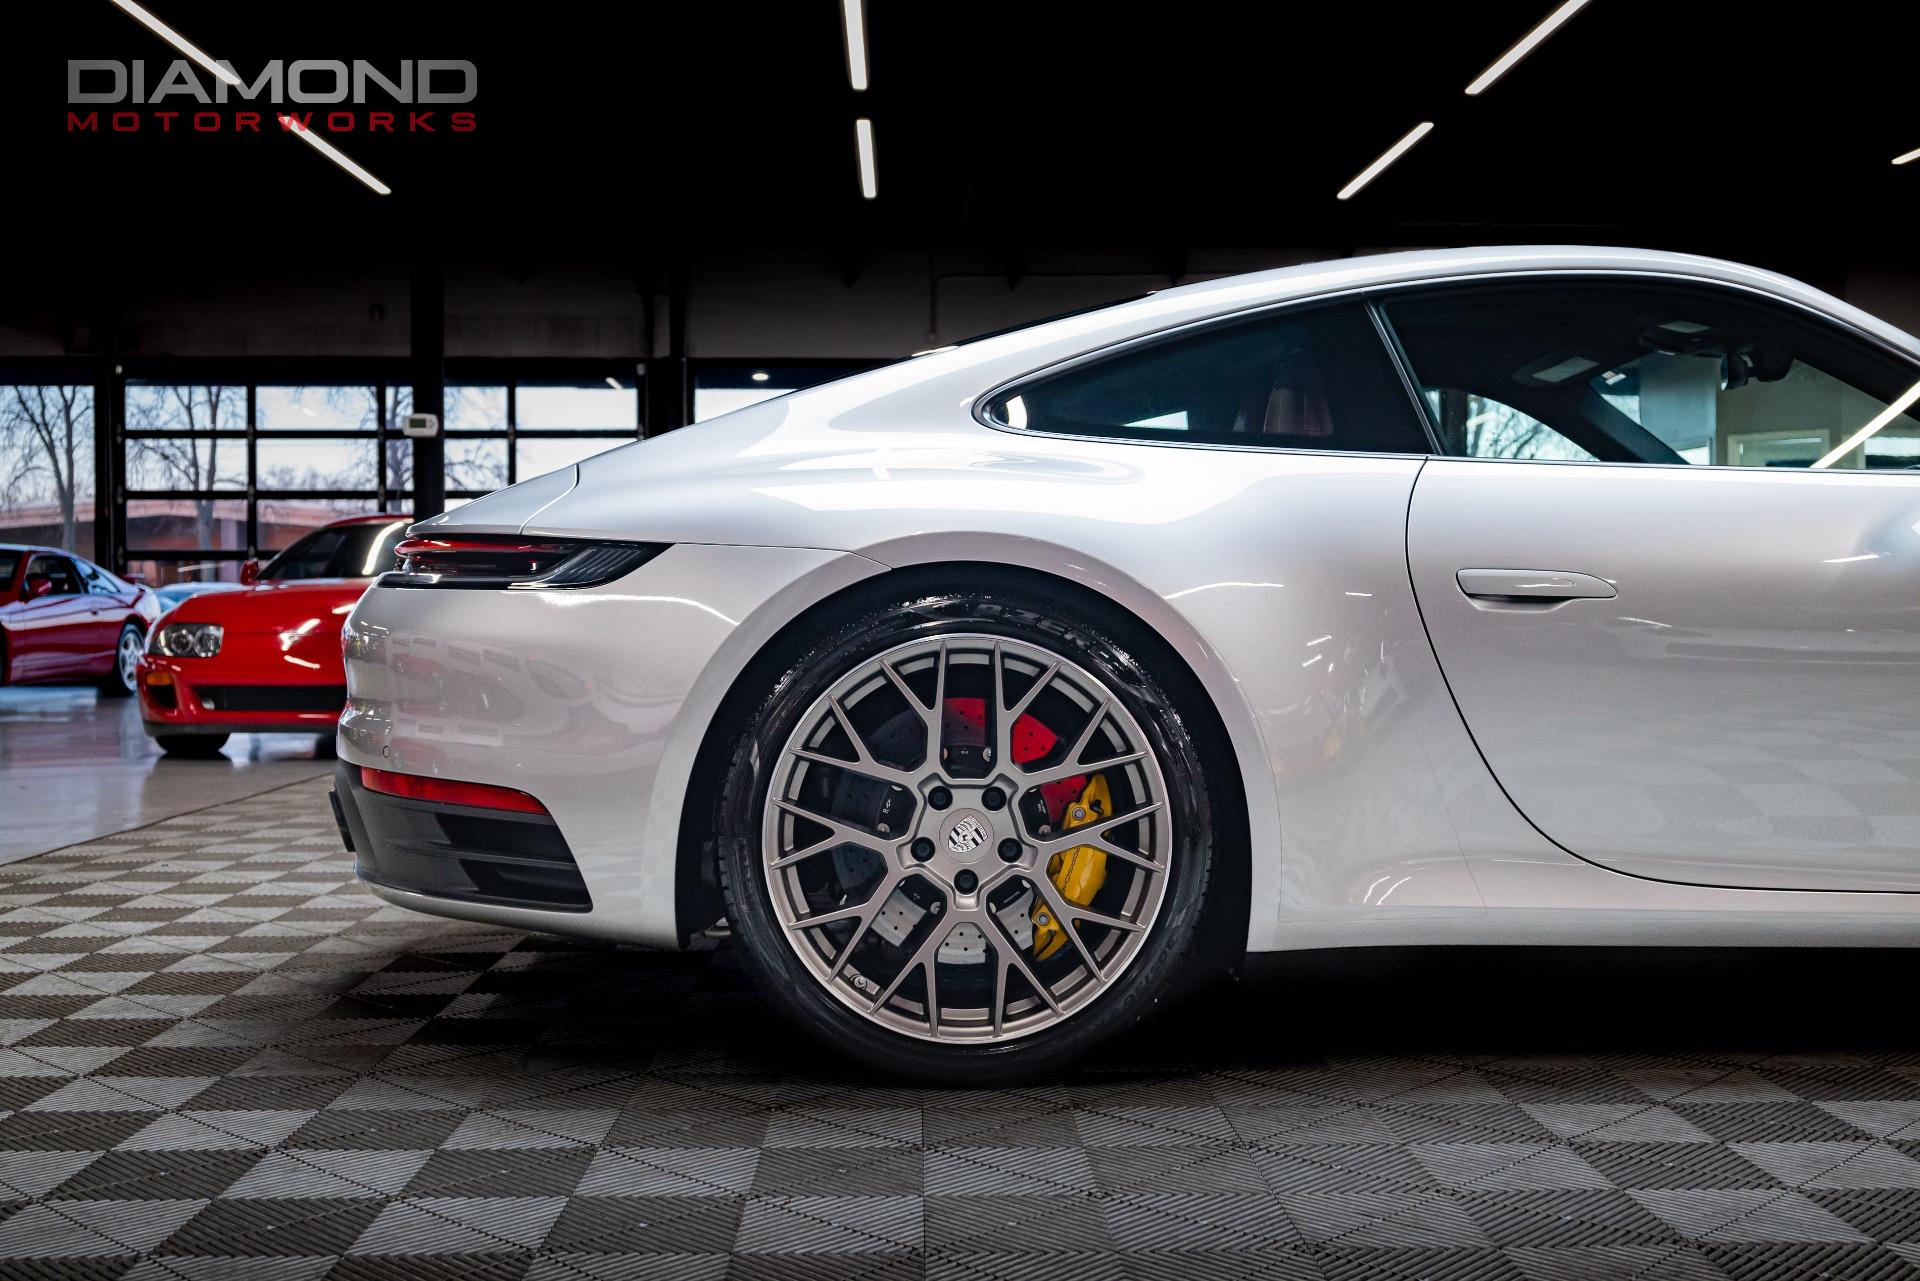 Used 2021 Porsche 911 Carrera 4S For Sale (Sold) | Diamond 